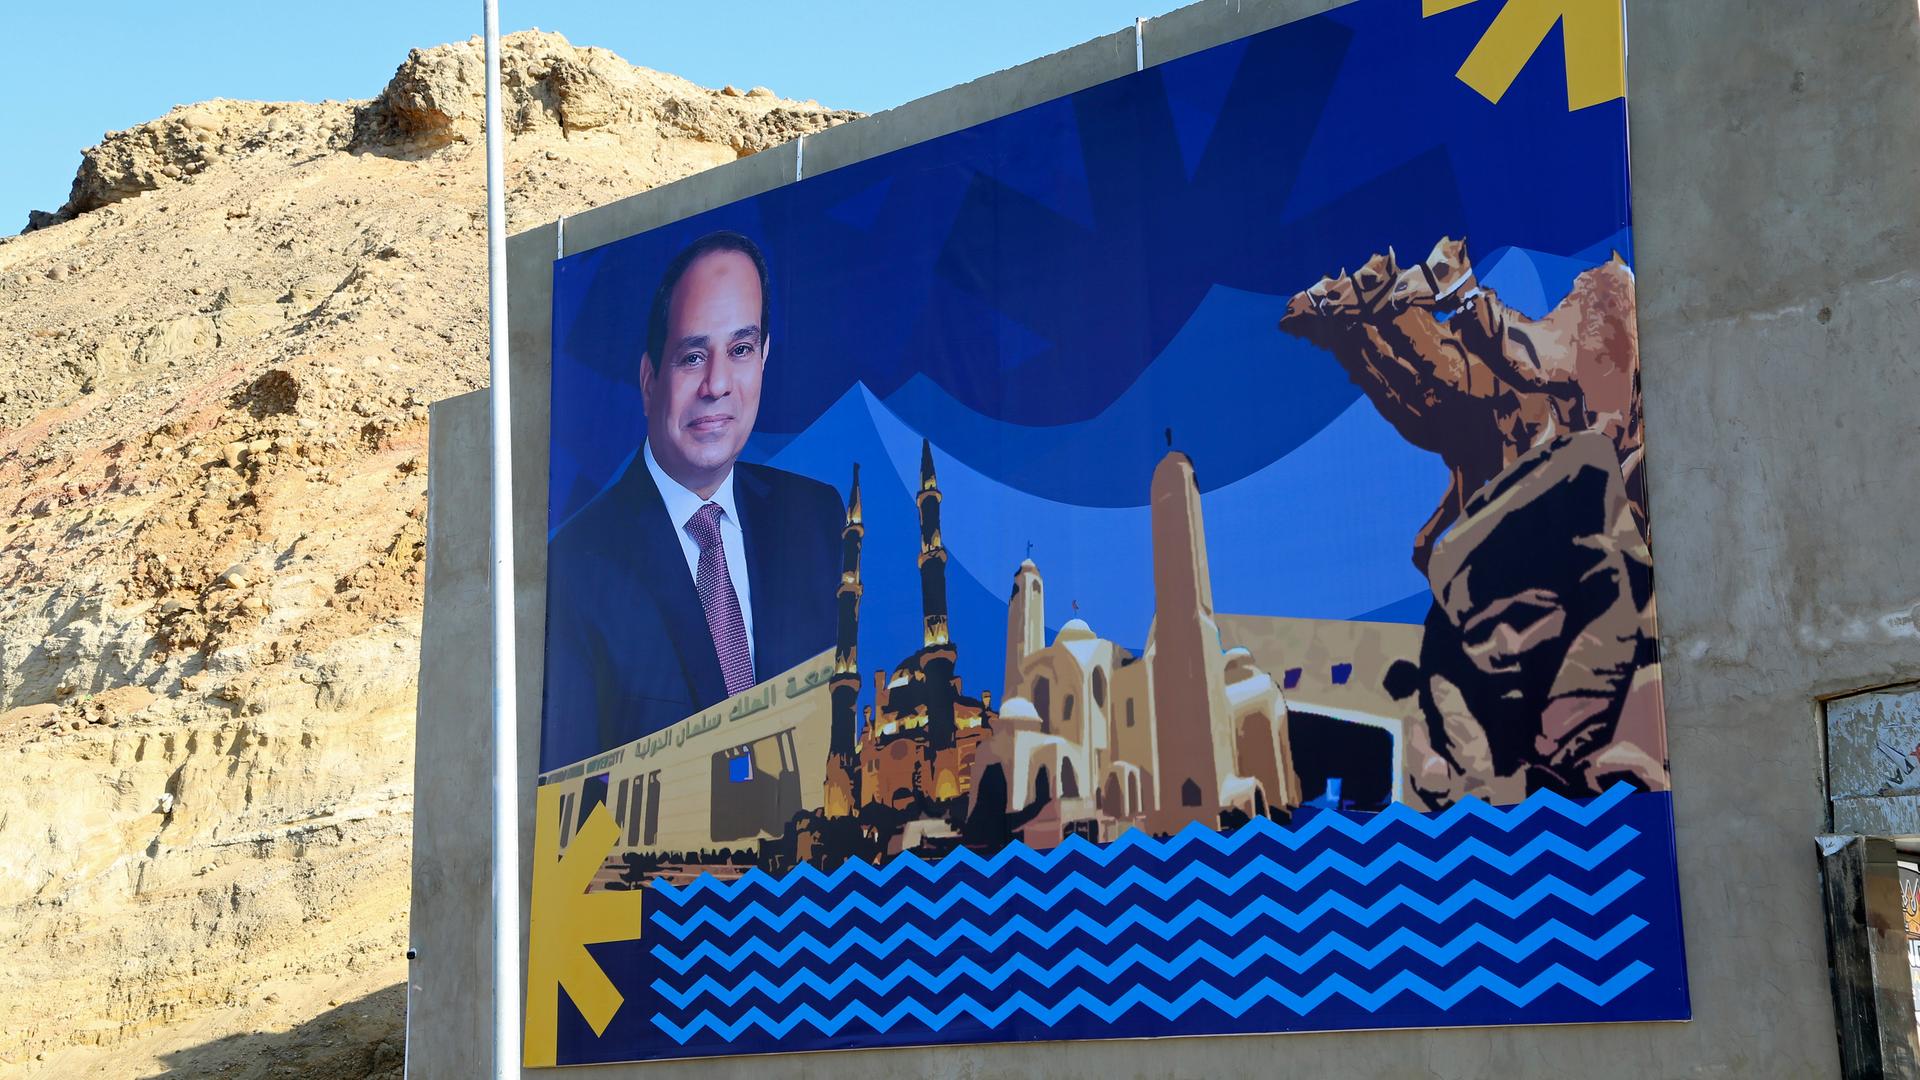 Ein großformatiges Wandbild zeit Ägpytens Präsidenten Abdel Fattah el-Sissi in einer graphischen Darstellung, die auf die UN-Klimakonferenz in Sharm El-Sheikh hinweist.